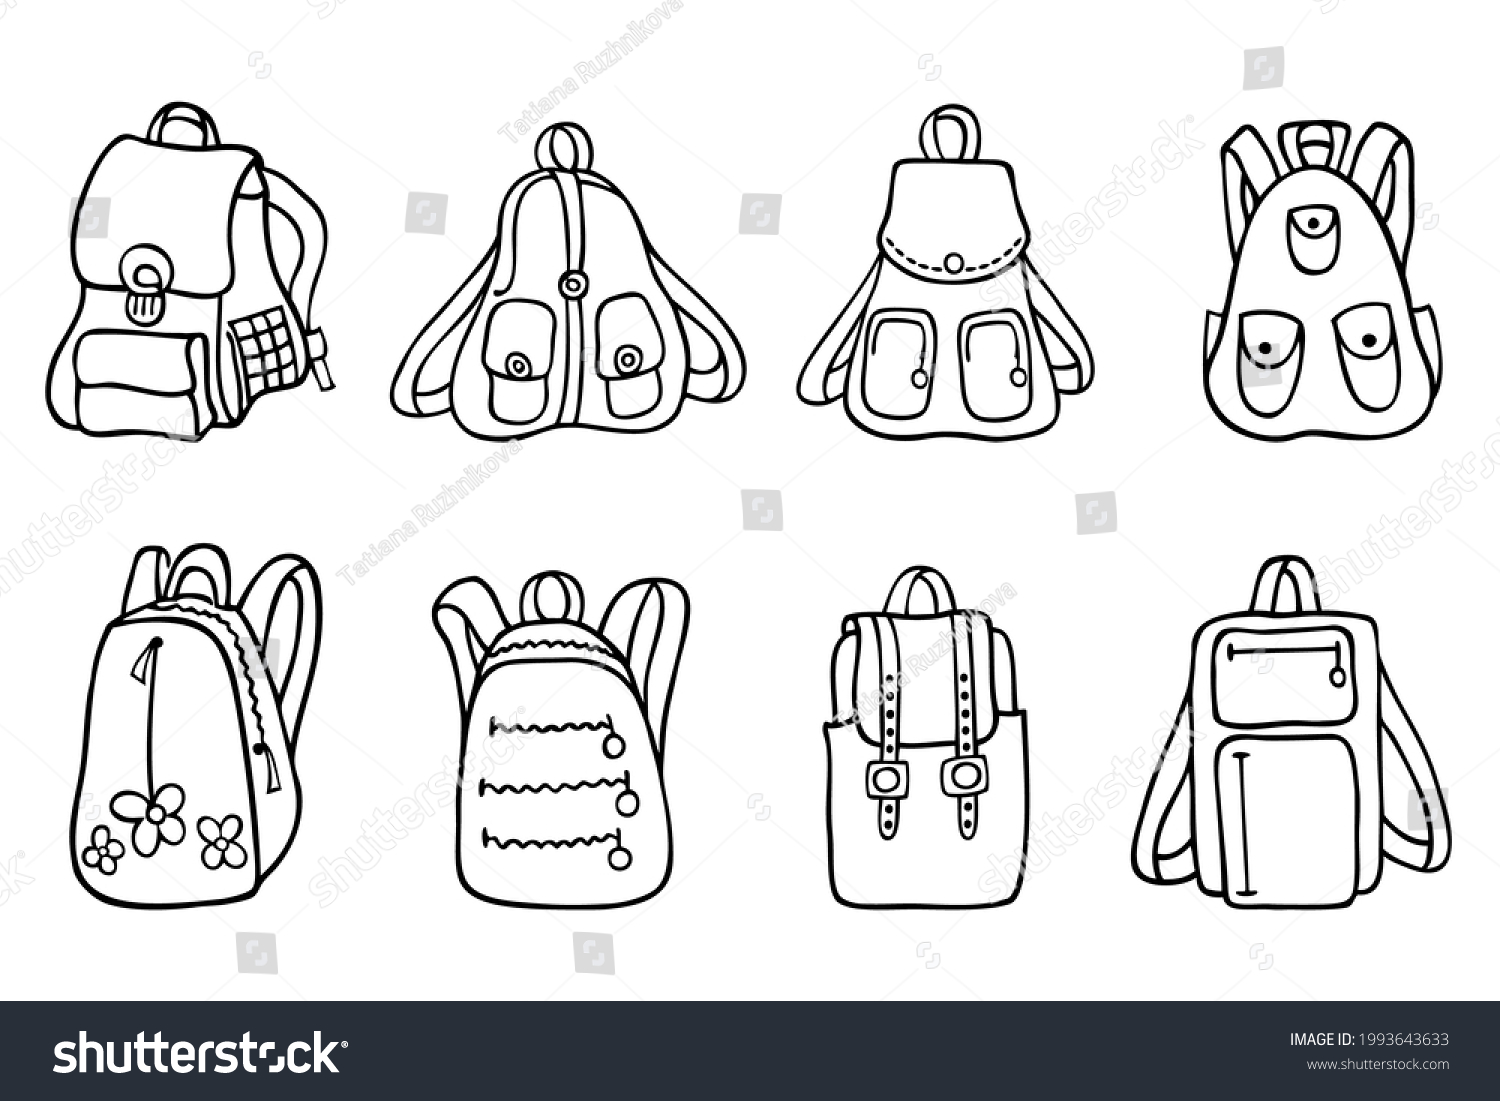 Backpacks Black White Illustration Set 8 Stock Vector (Royalty Free ...